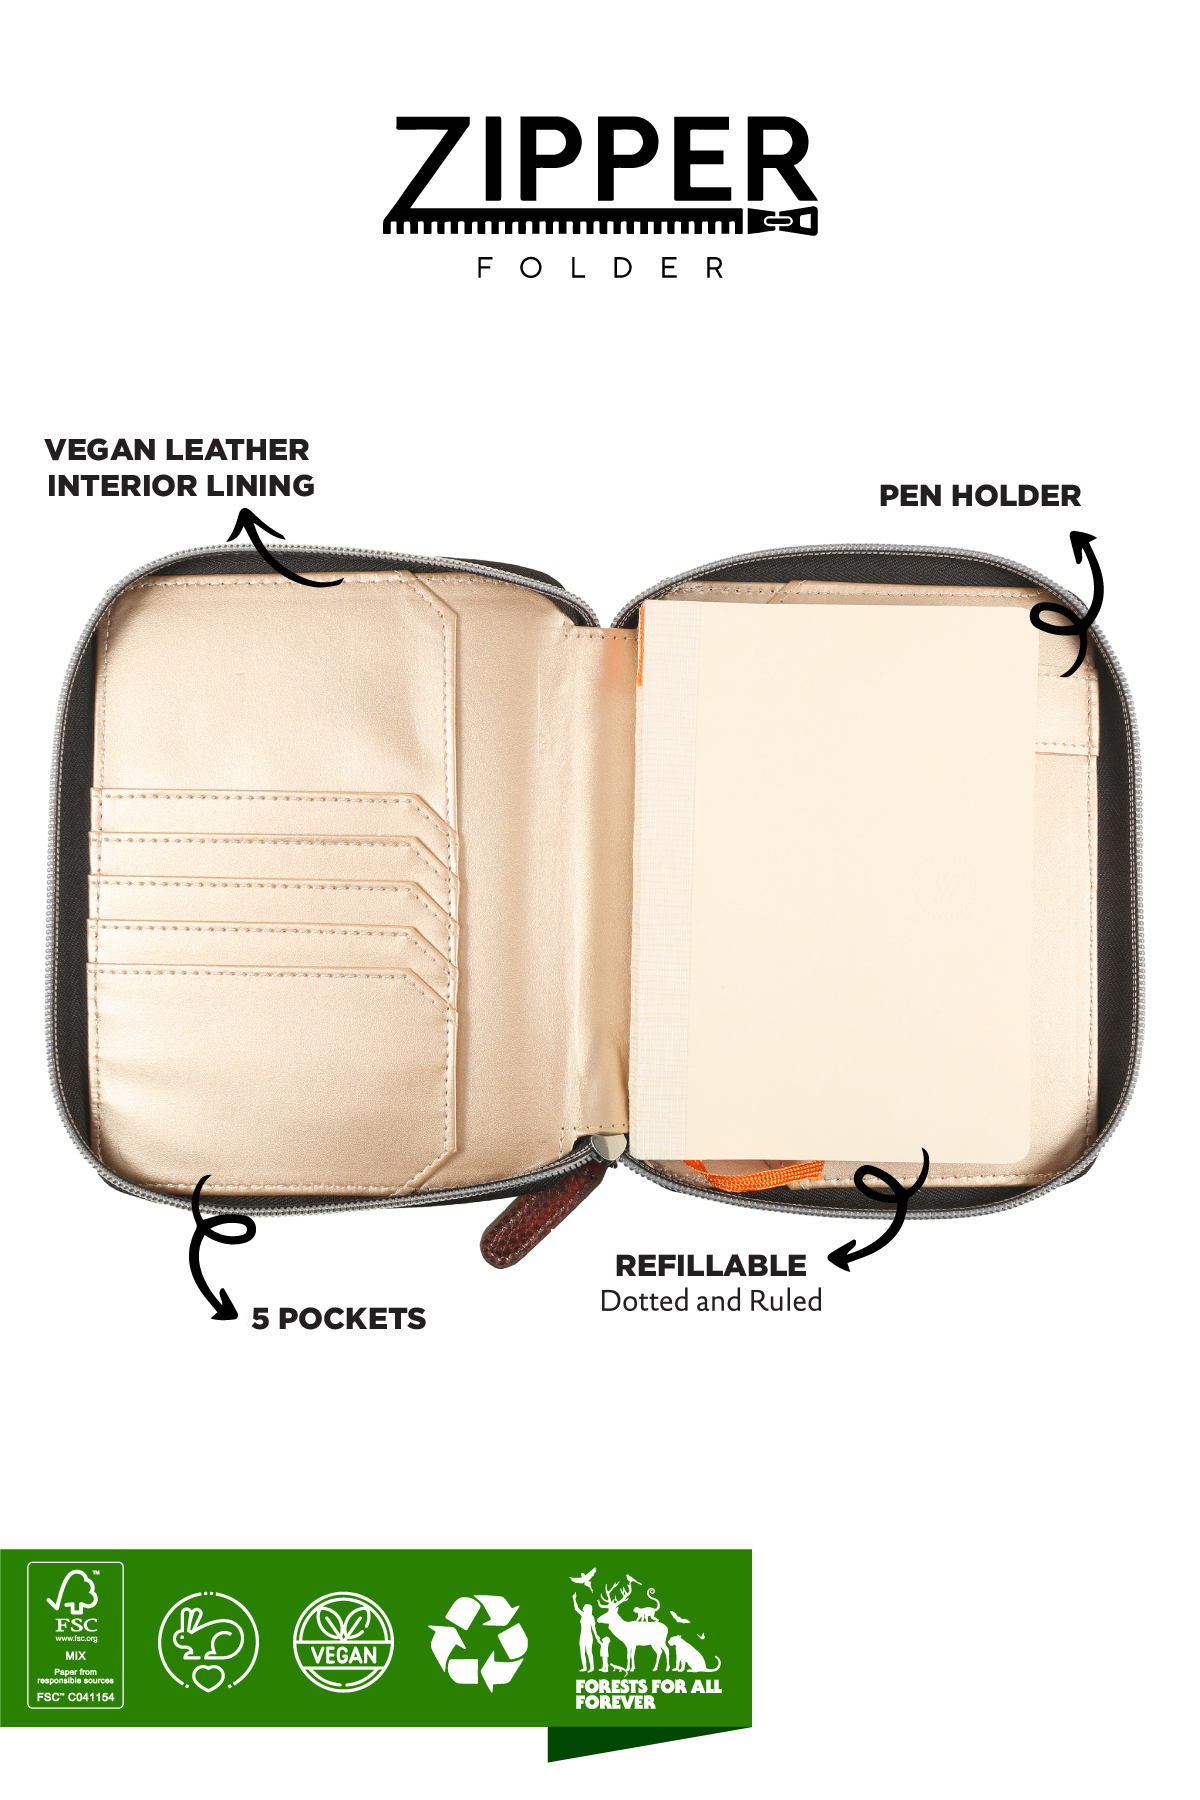 Zippered Vegan Leather Portfolio Diary (Vintage Brown)